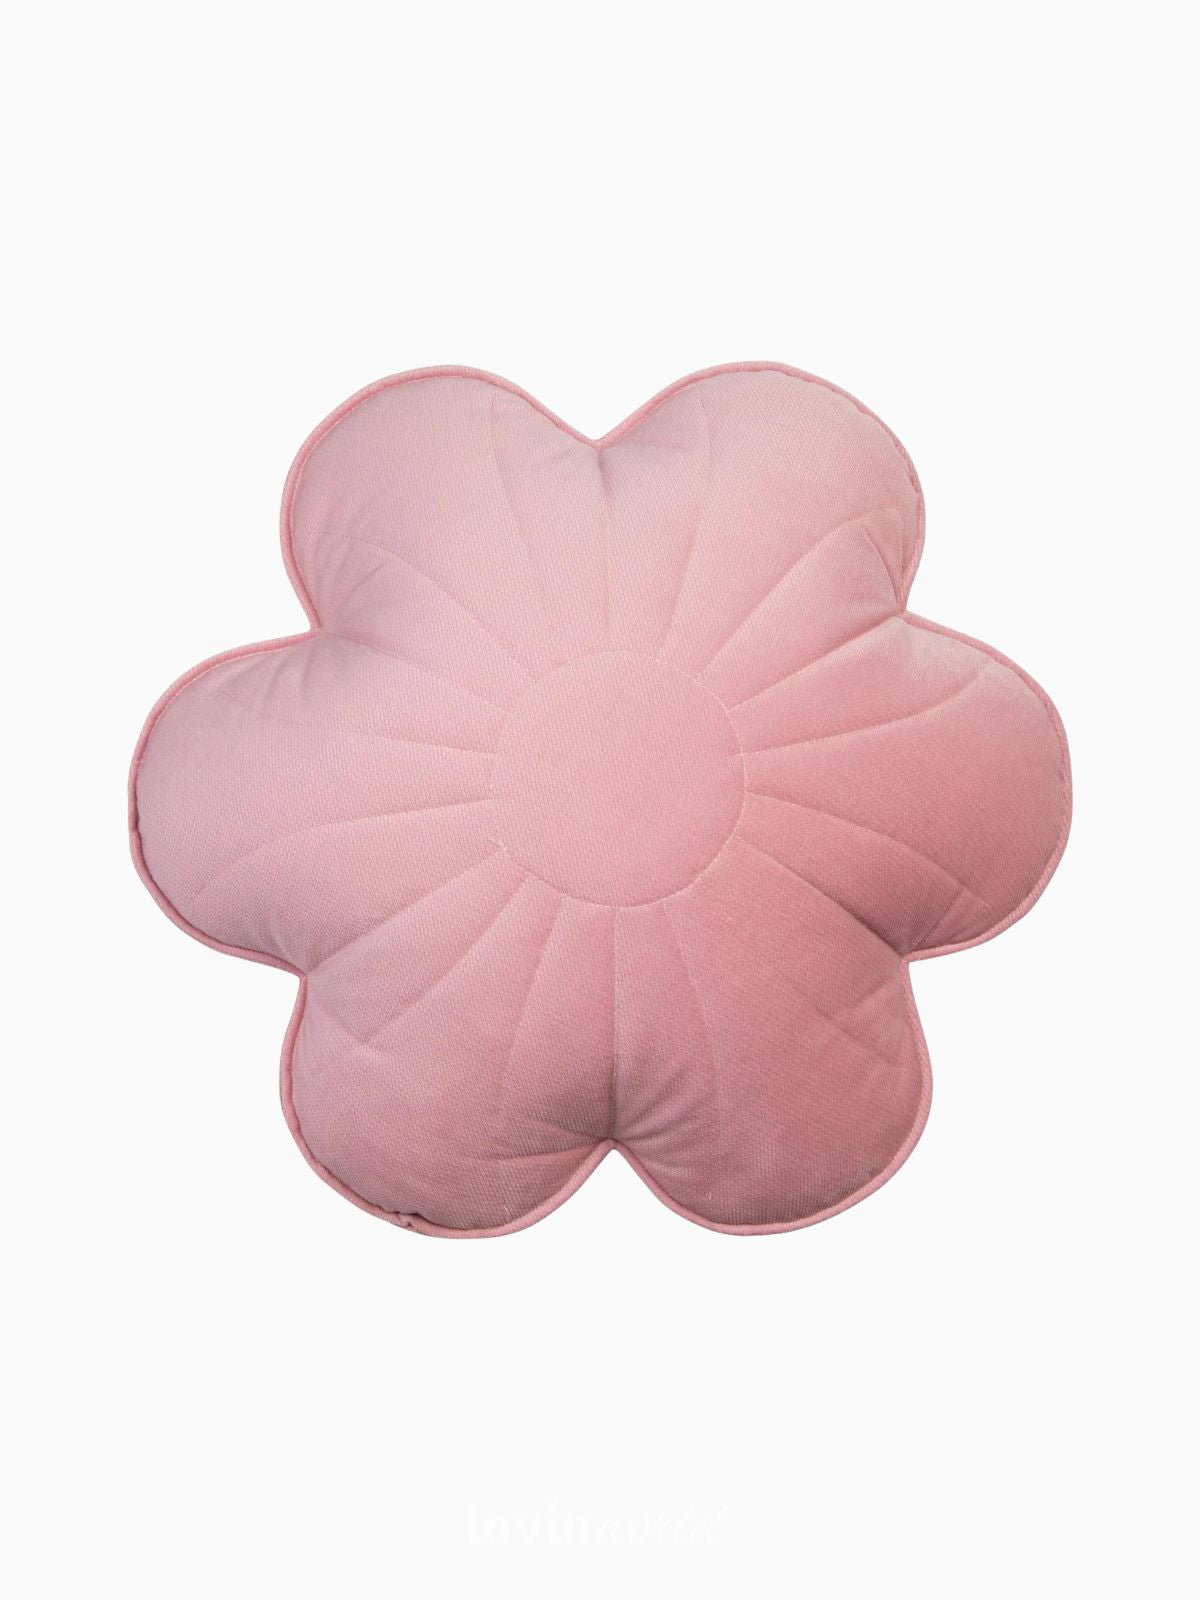 Cuscino fiore 100% velluto in colore rosa 49x49 cm.-1